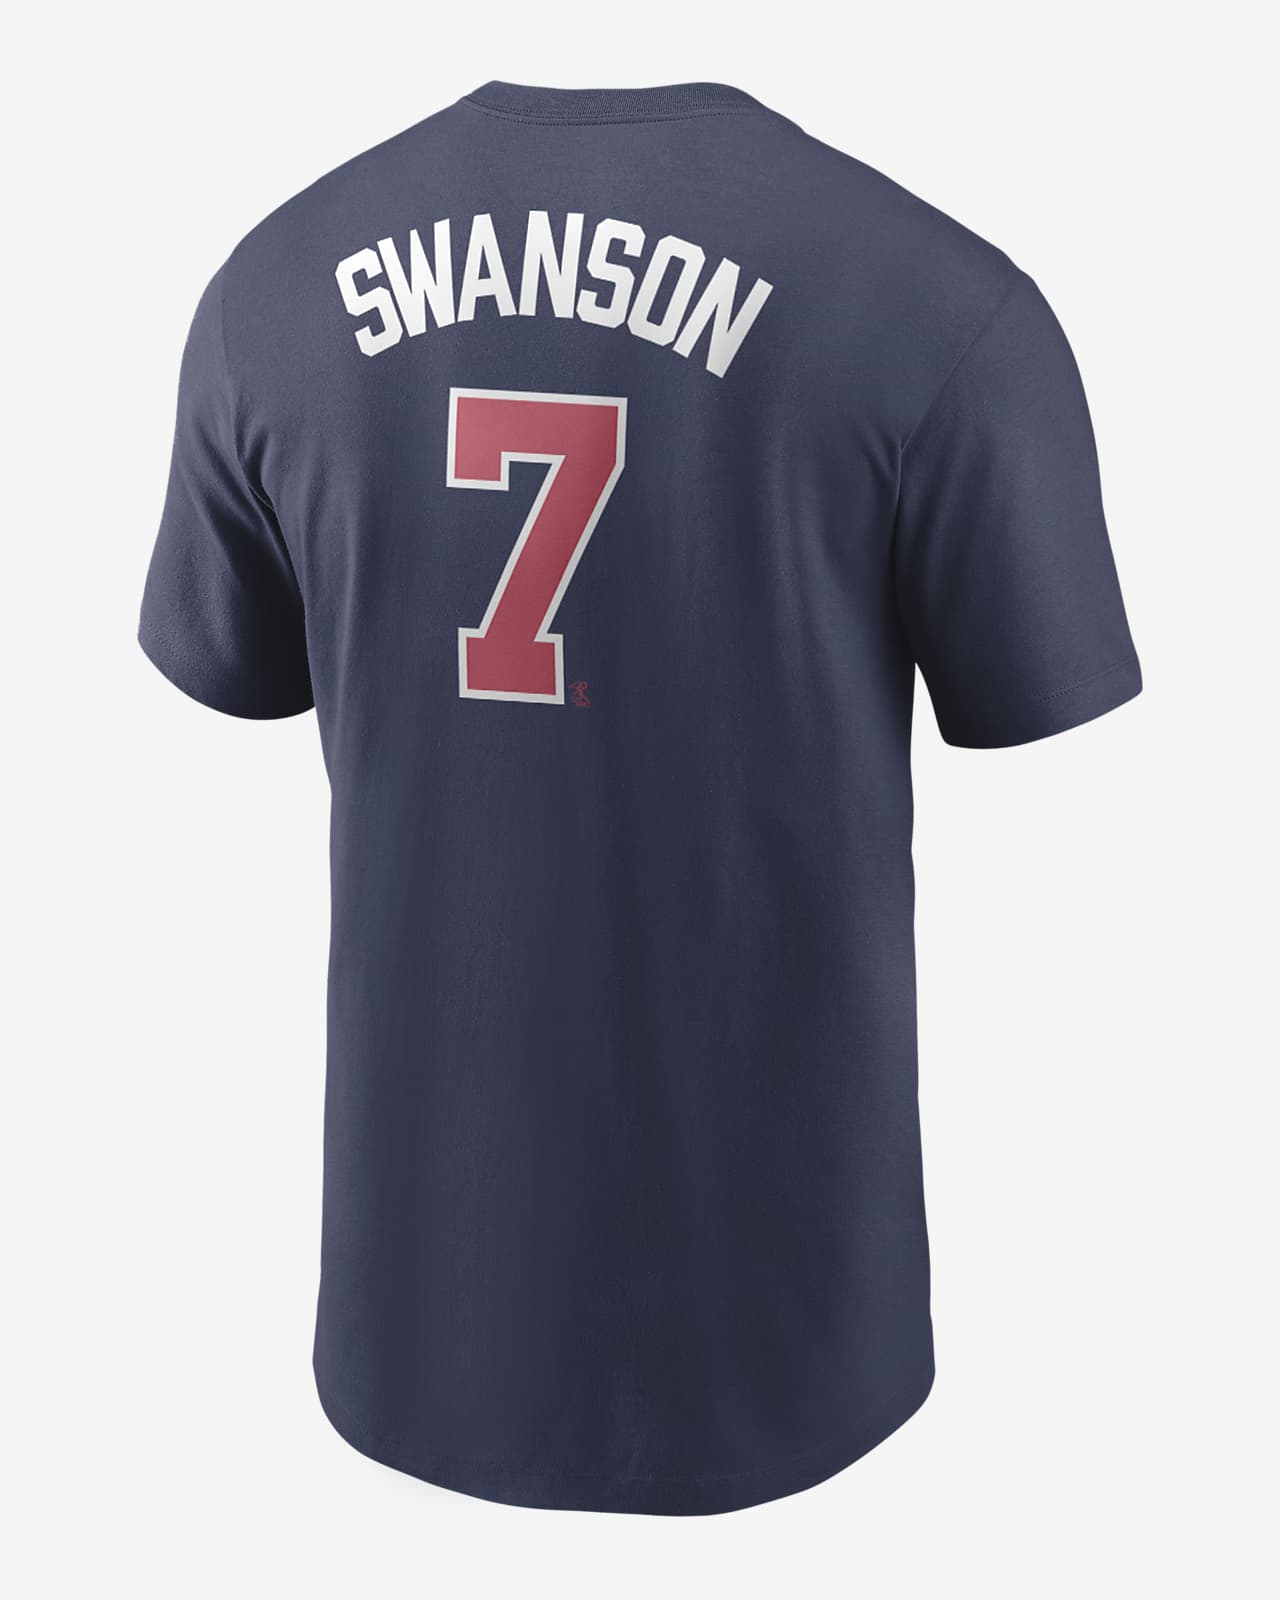 MLB Atlanta Braves (Dansby Swanson) Men's T-Shirt.